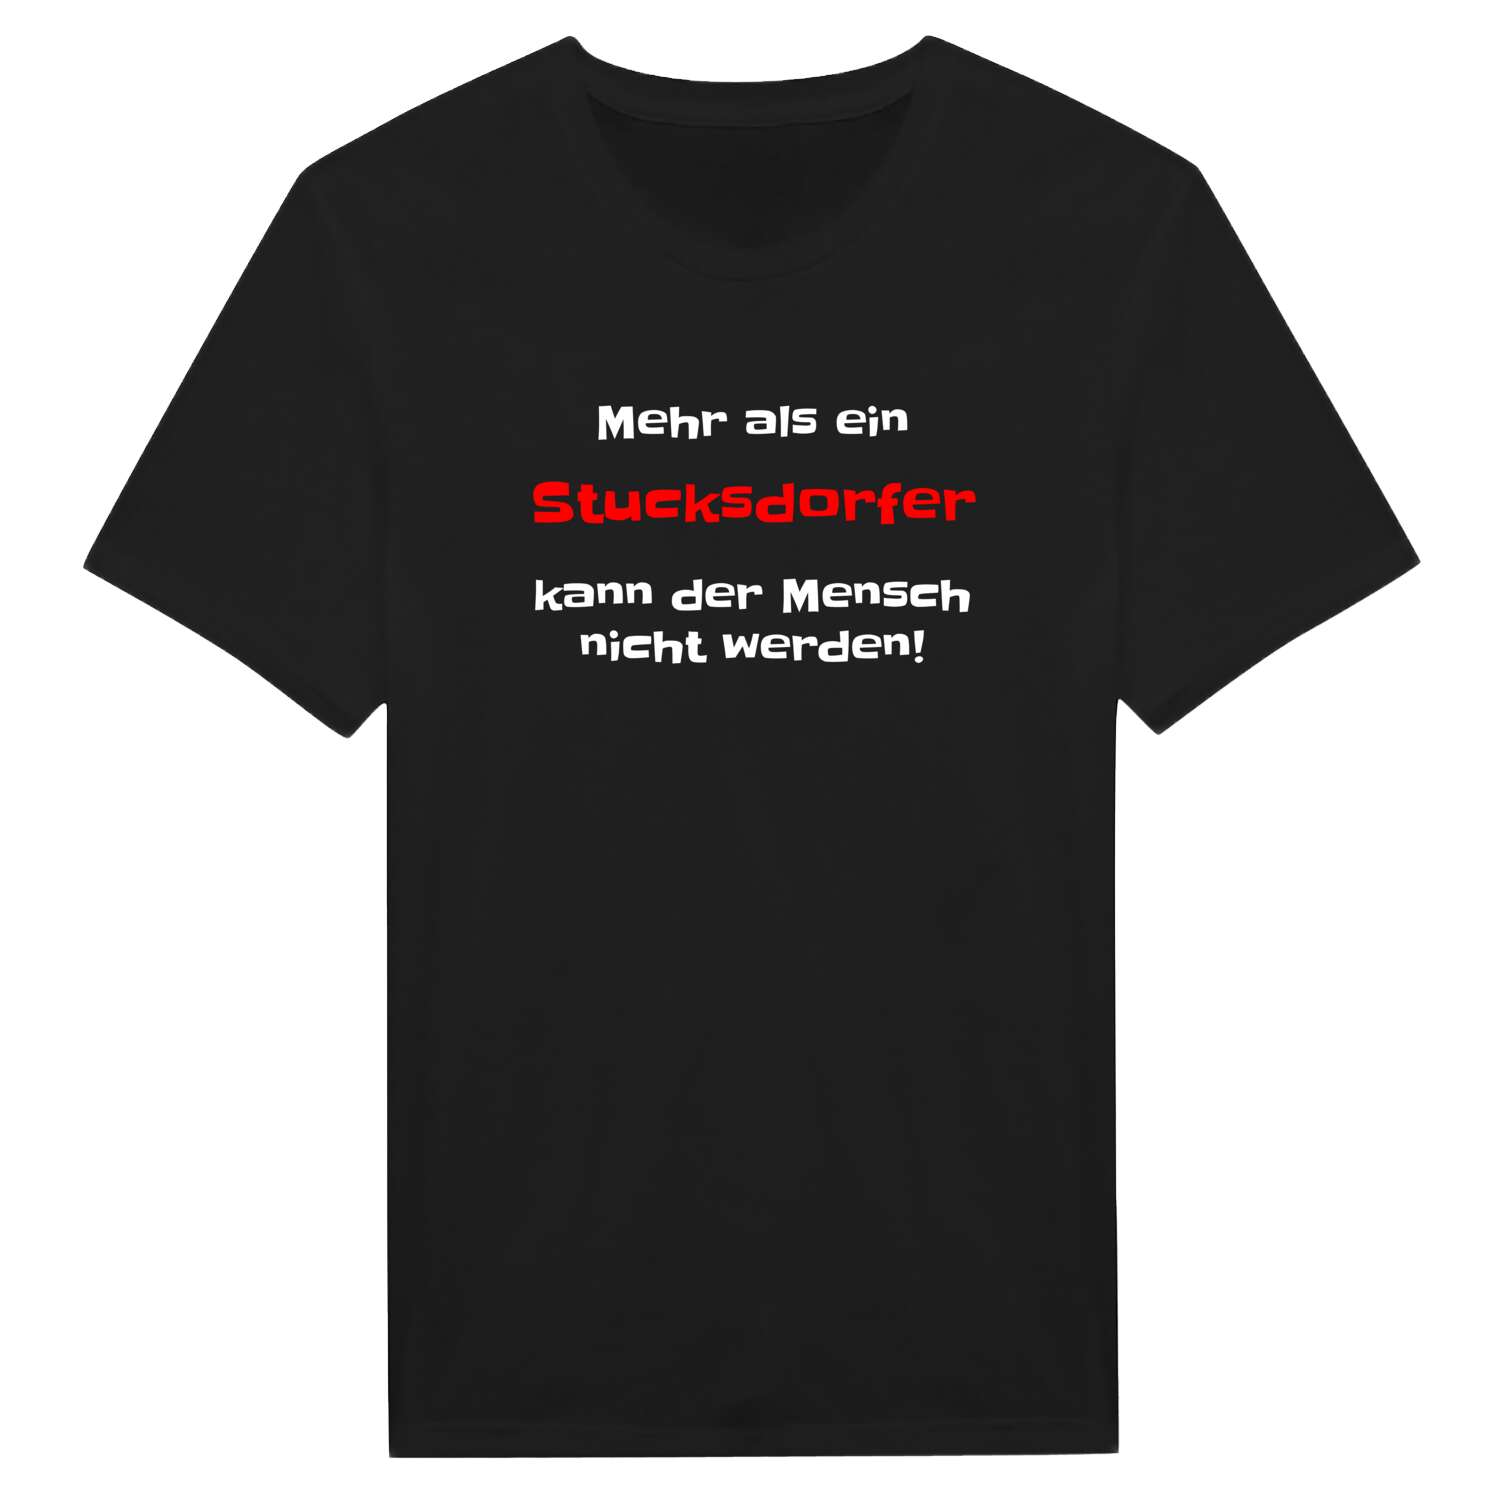 Stucksdorf T-Shirt »Mehr als ein«